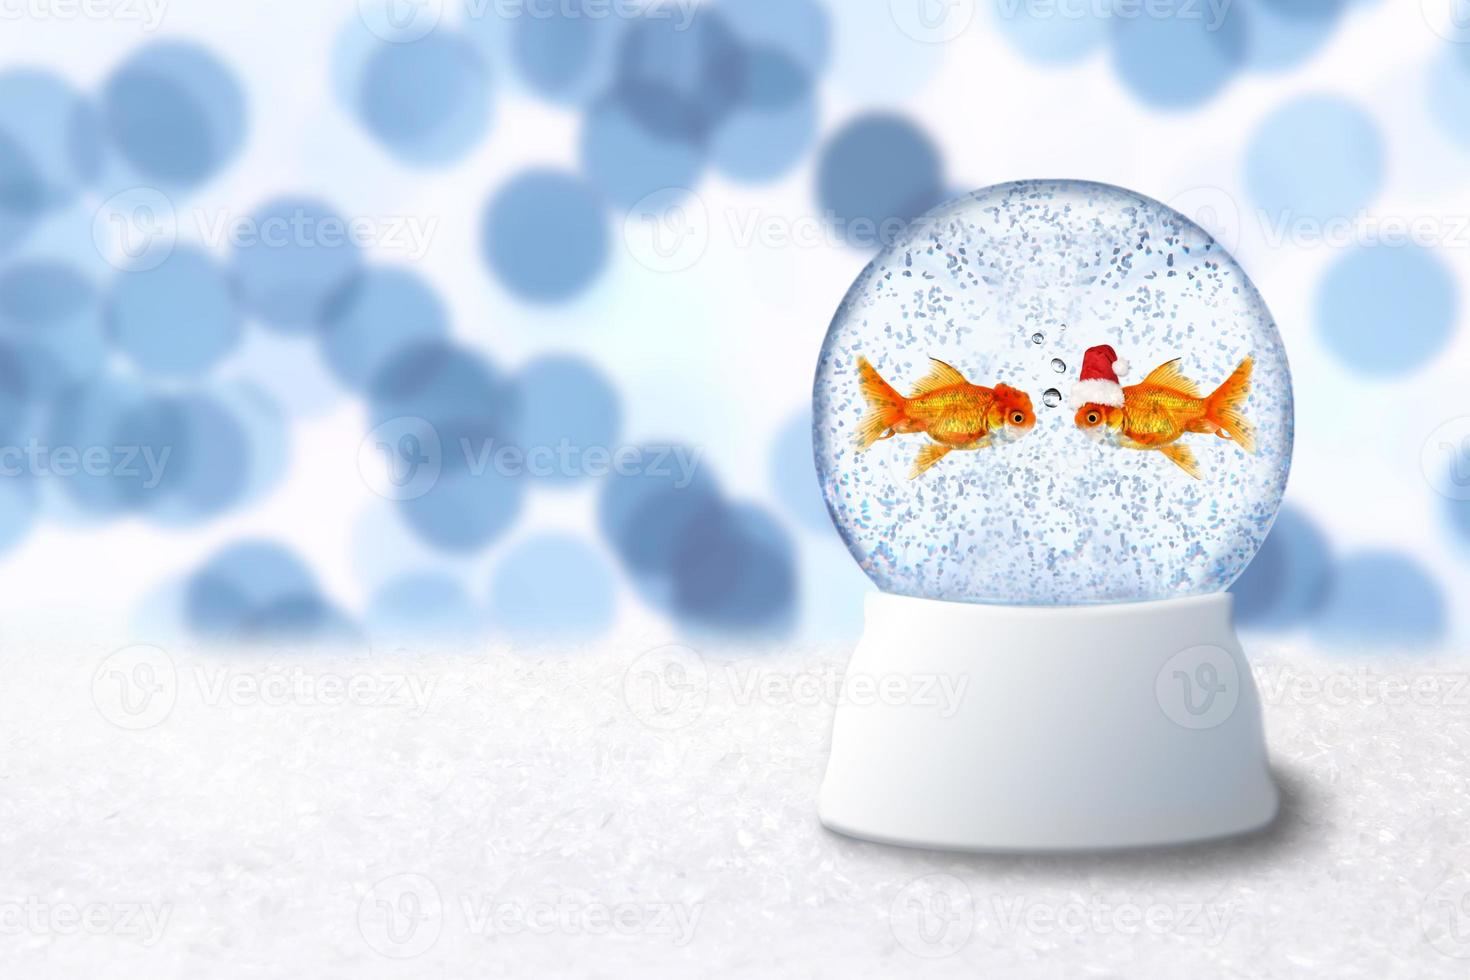 Bola de nieve navideña con peces de colores santa en el interior foto